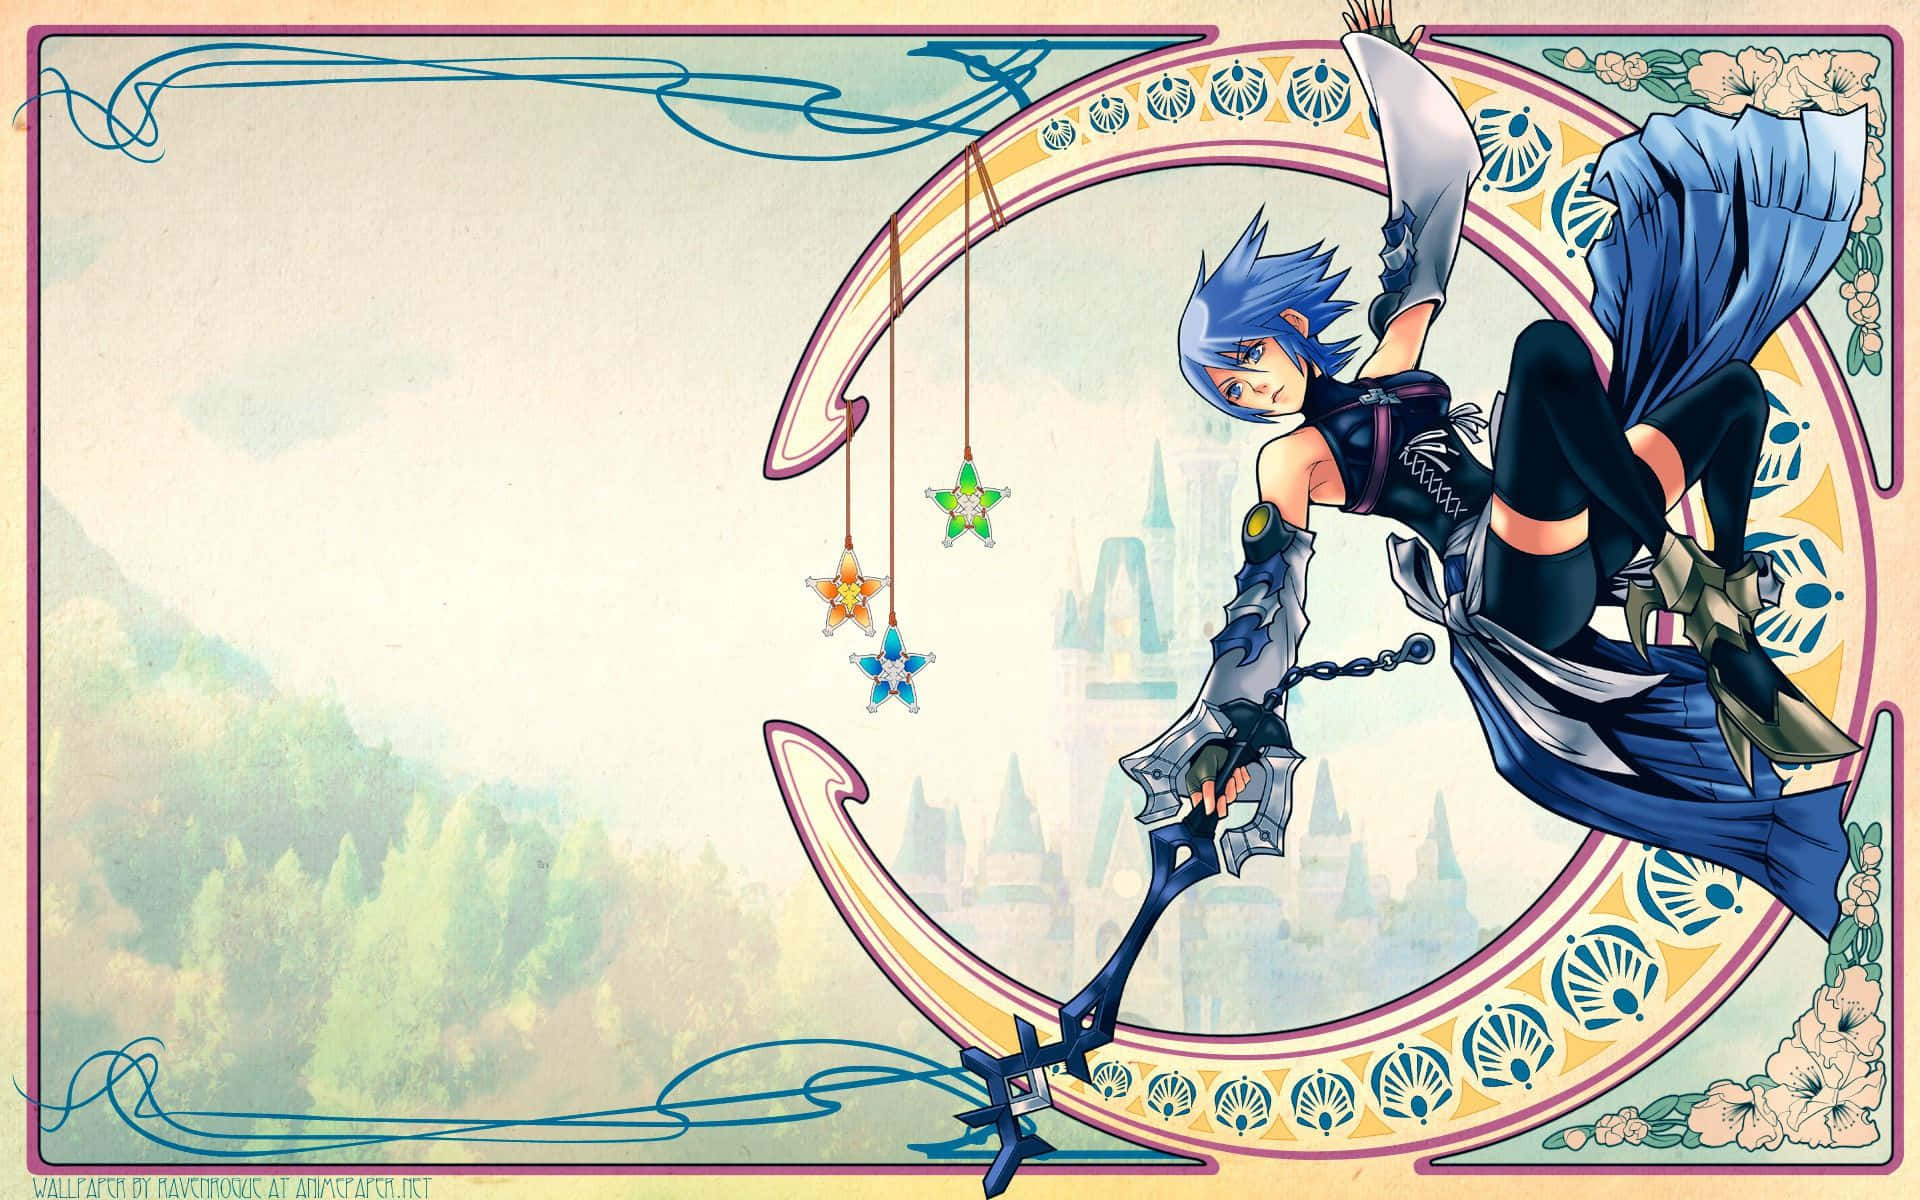 Aqua from Kingdom Hearts Wallpaper